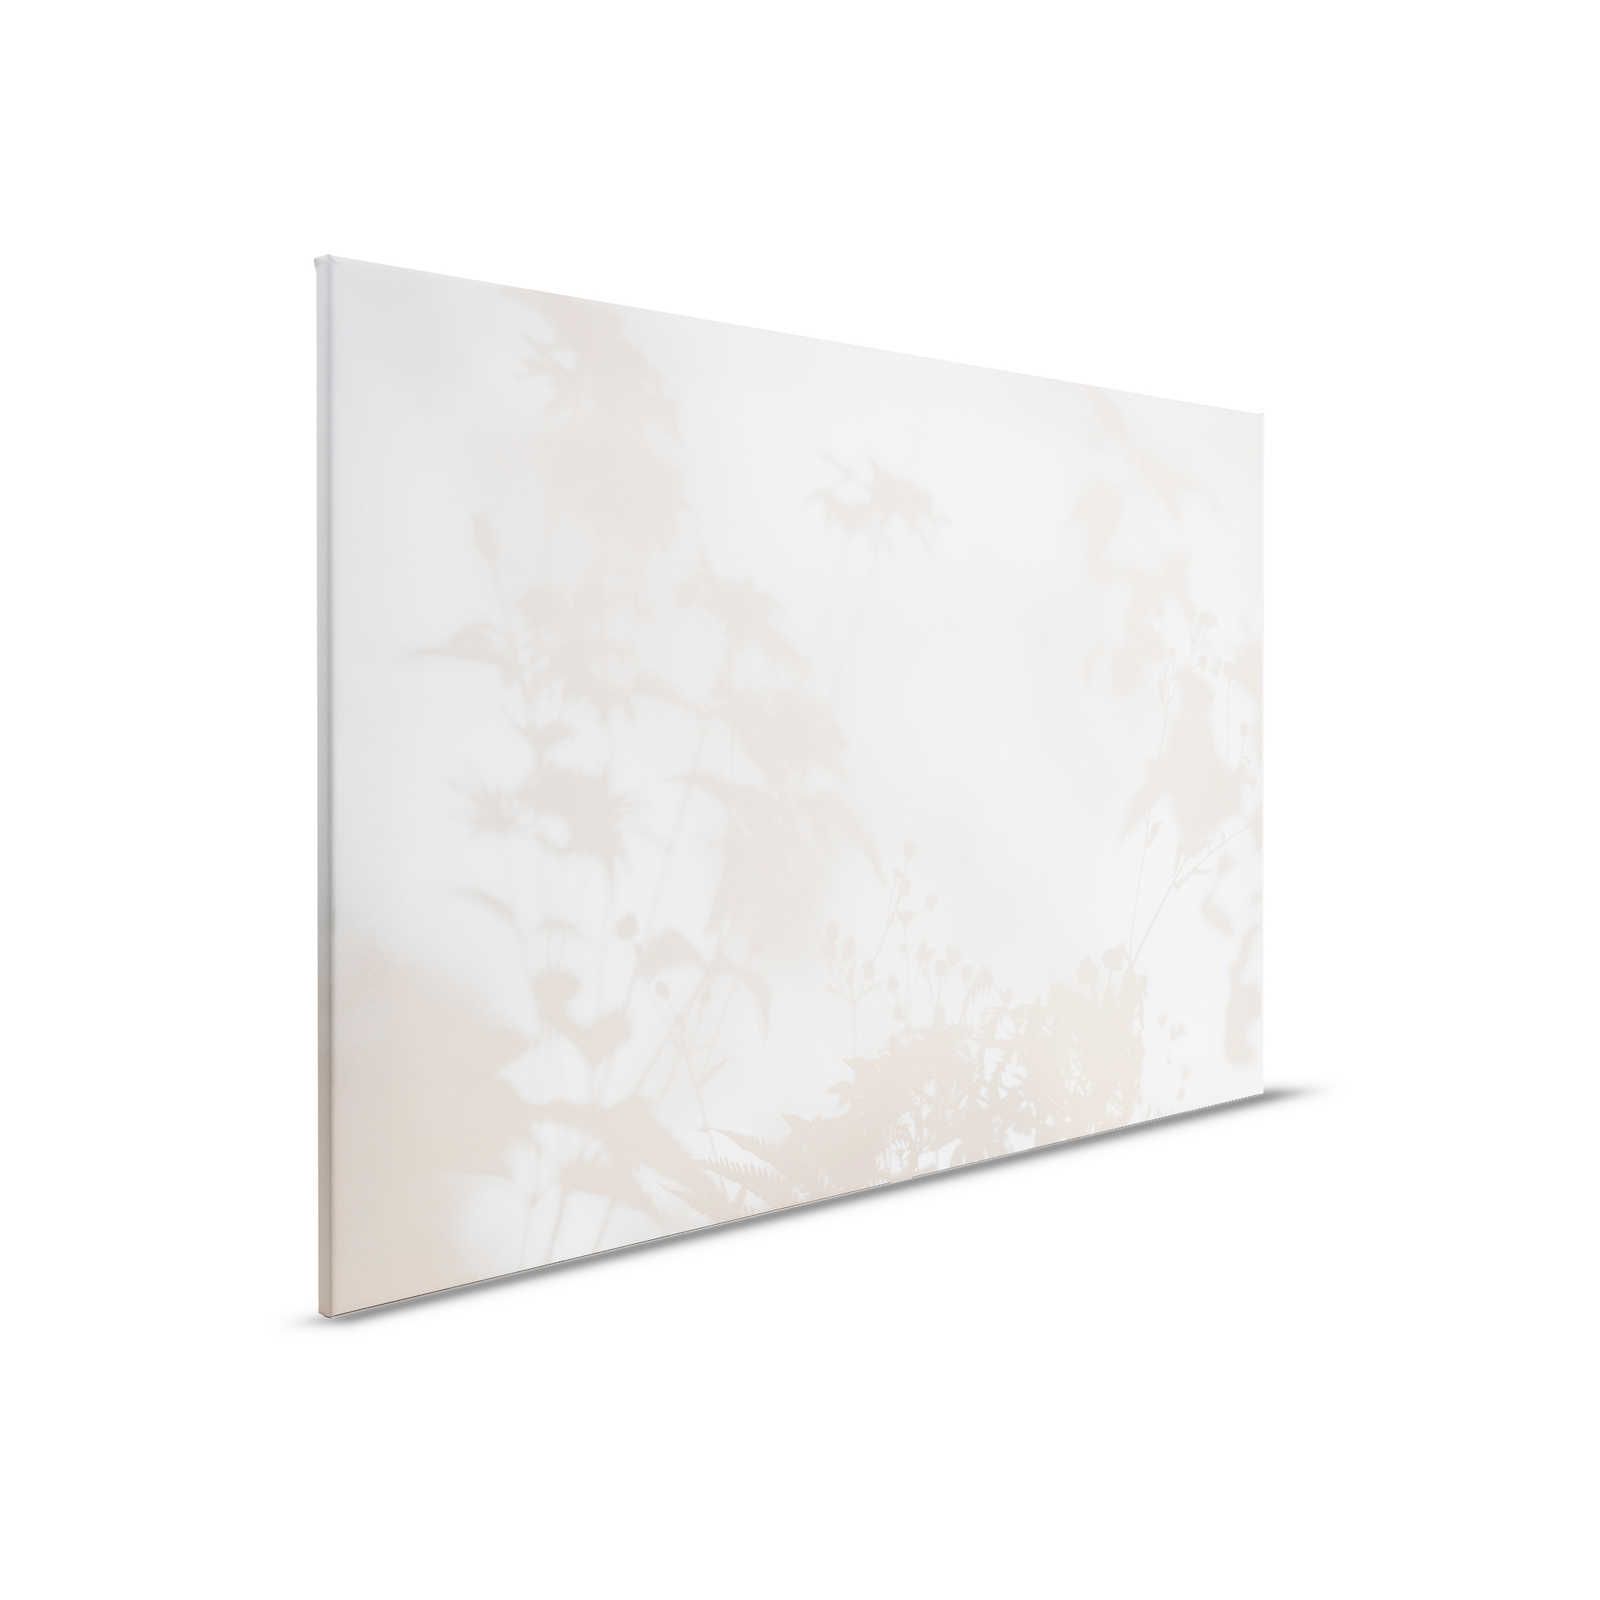 Shadow Room 1 - Natur Leinwandbild Beige & Weiß, verblasstes Design – 0,90 m x 0,60 m
